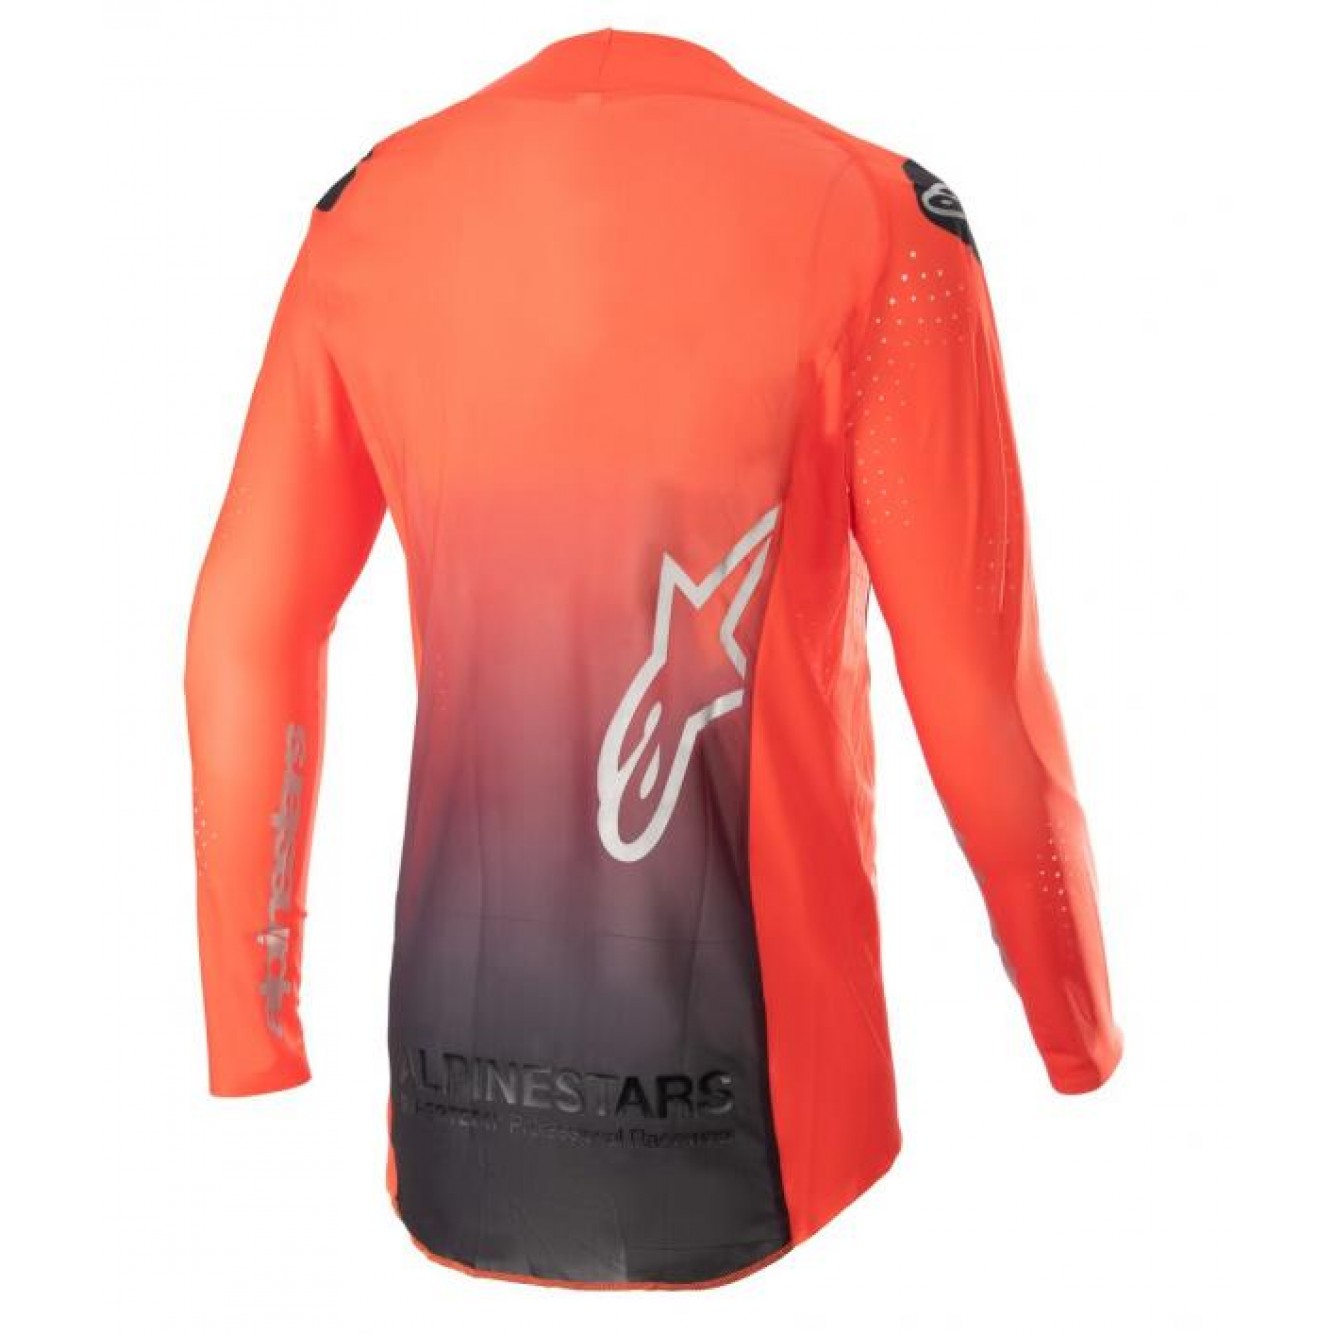 Alpinestars | Cross shirt Supertech Risen Oranje / Zwart